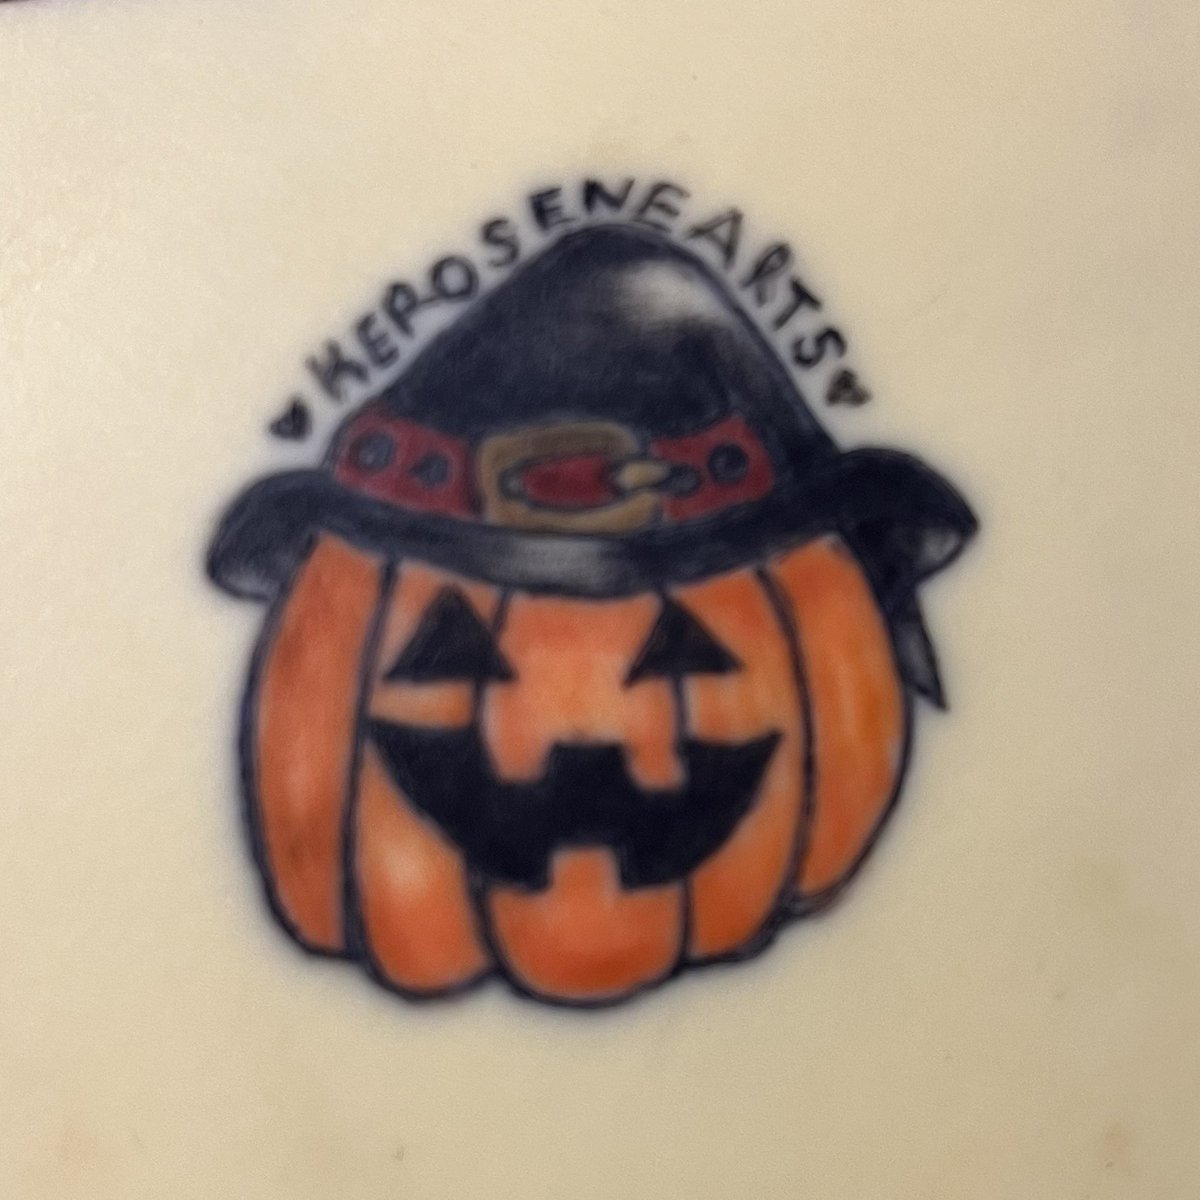 spooky szn is coming up 
-
#Halloween #pumpkin #spookyszn #spookyseason #mastarcher #solidink #tattoos #eternalink #tattooartist